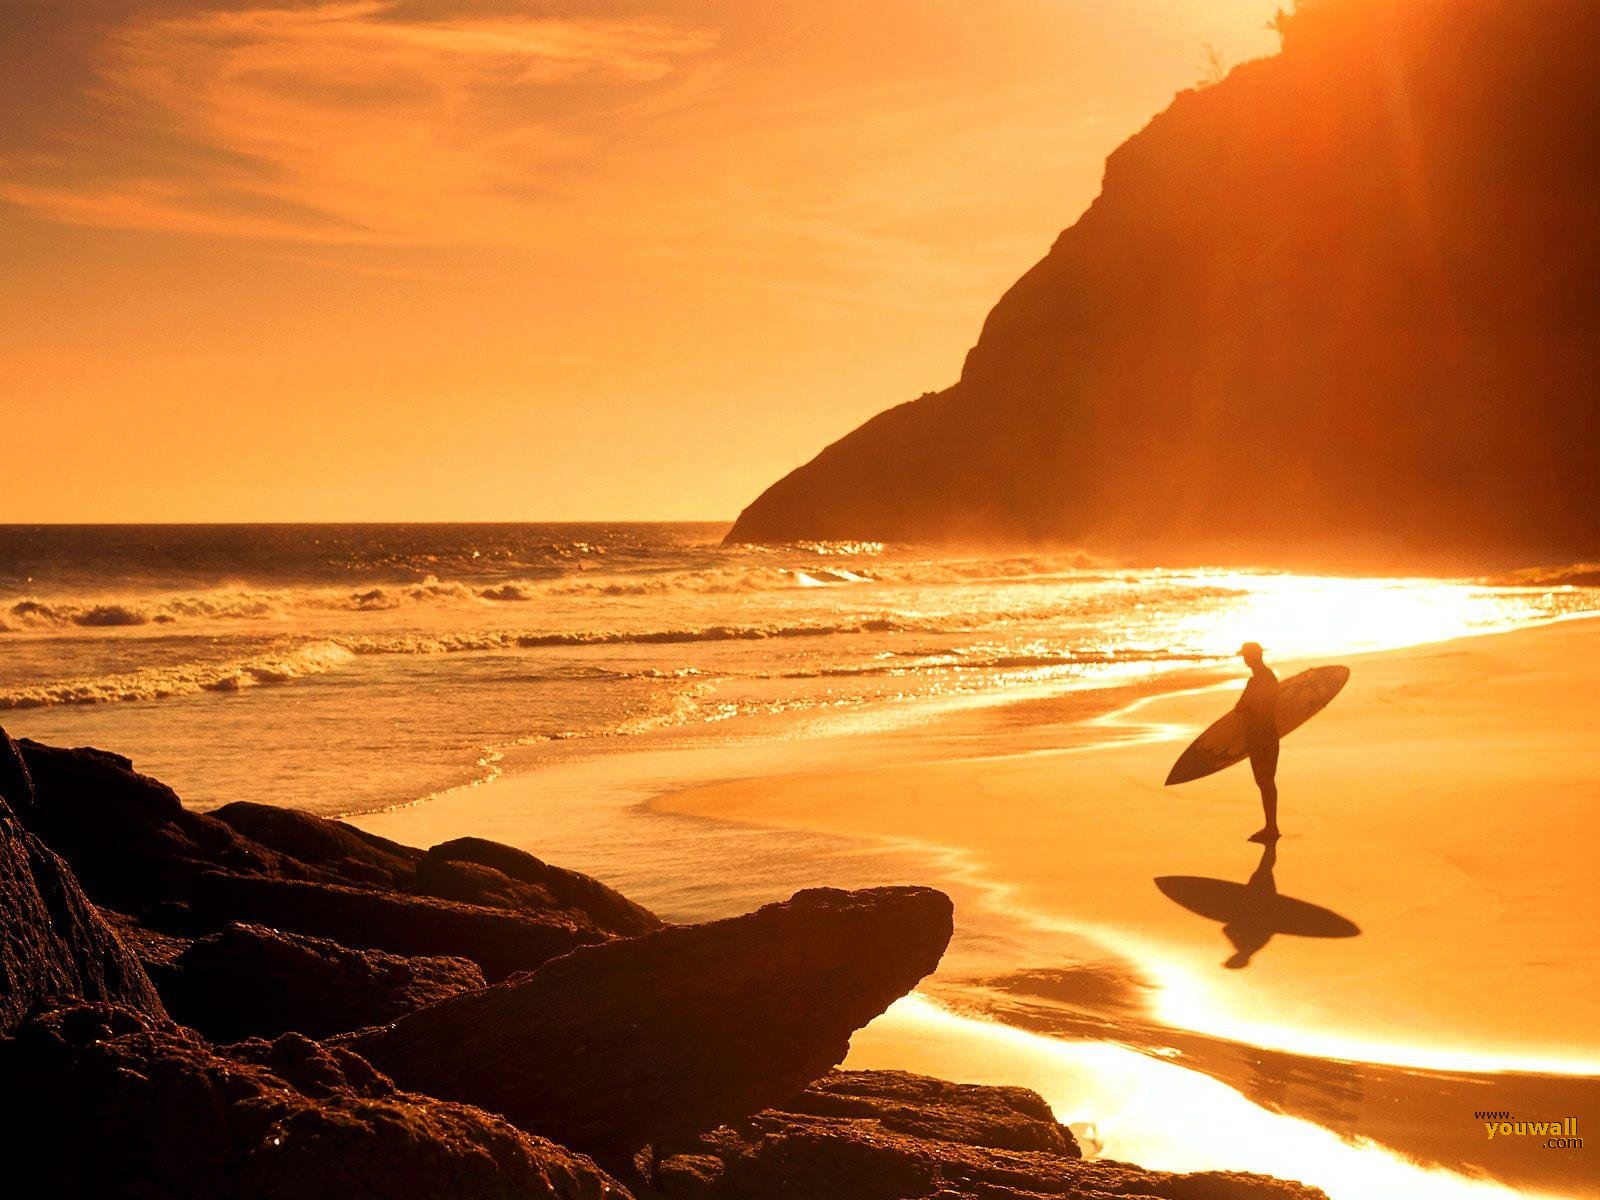 Youwall Beach Sunset Surf Wallpaper